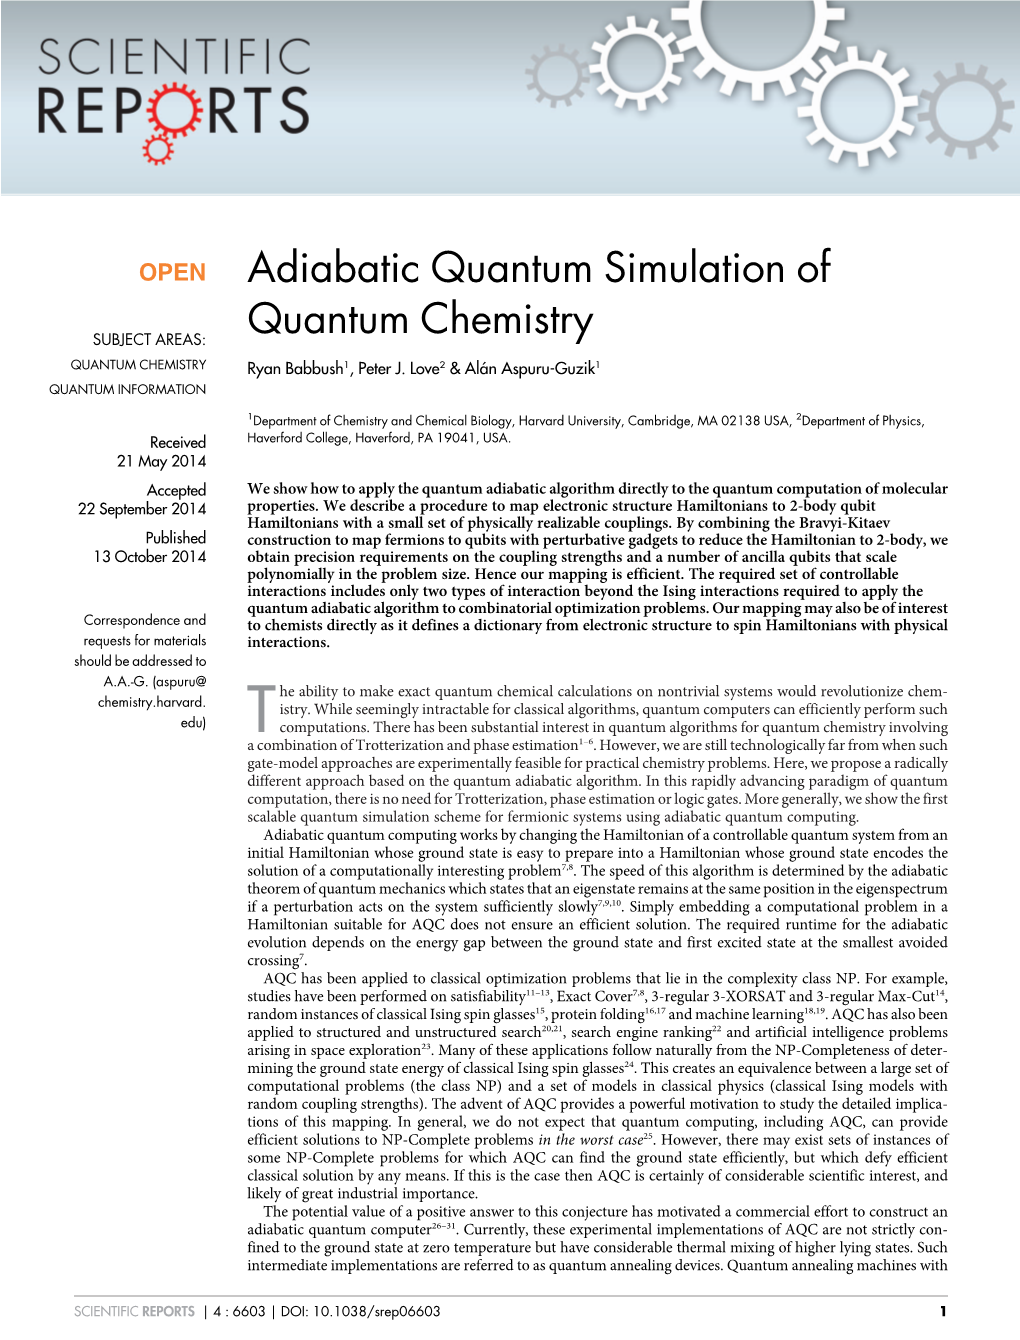 Adiabatic Quantum Simulation of Quantum Chemistry